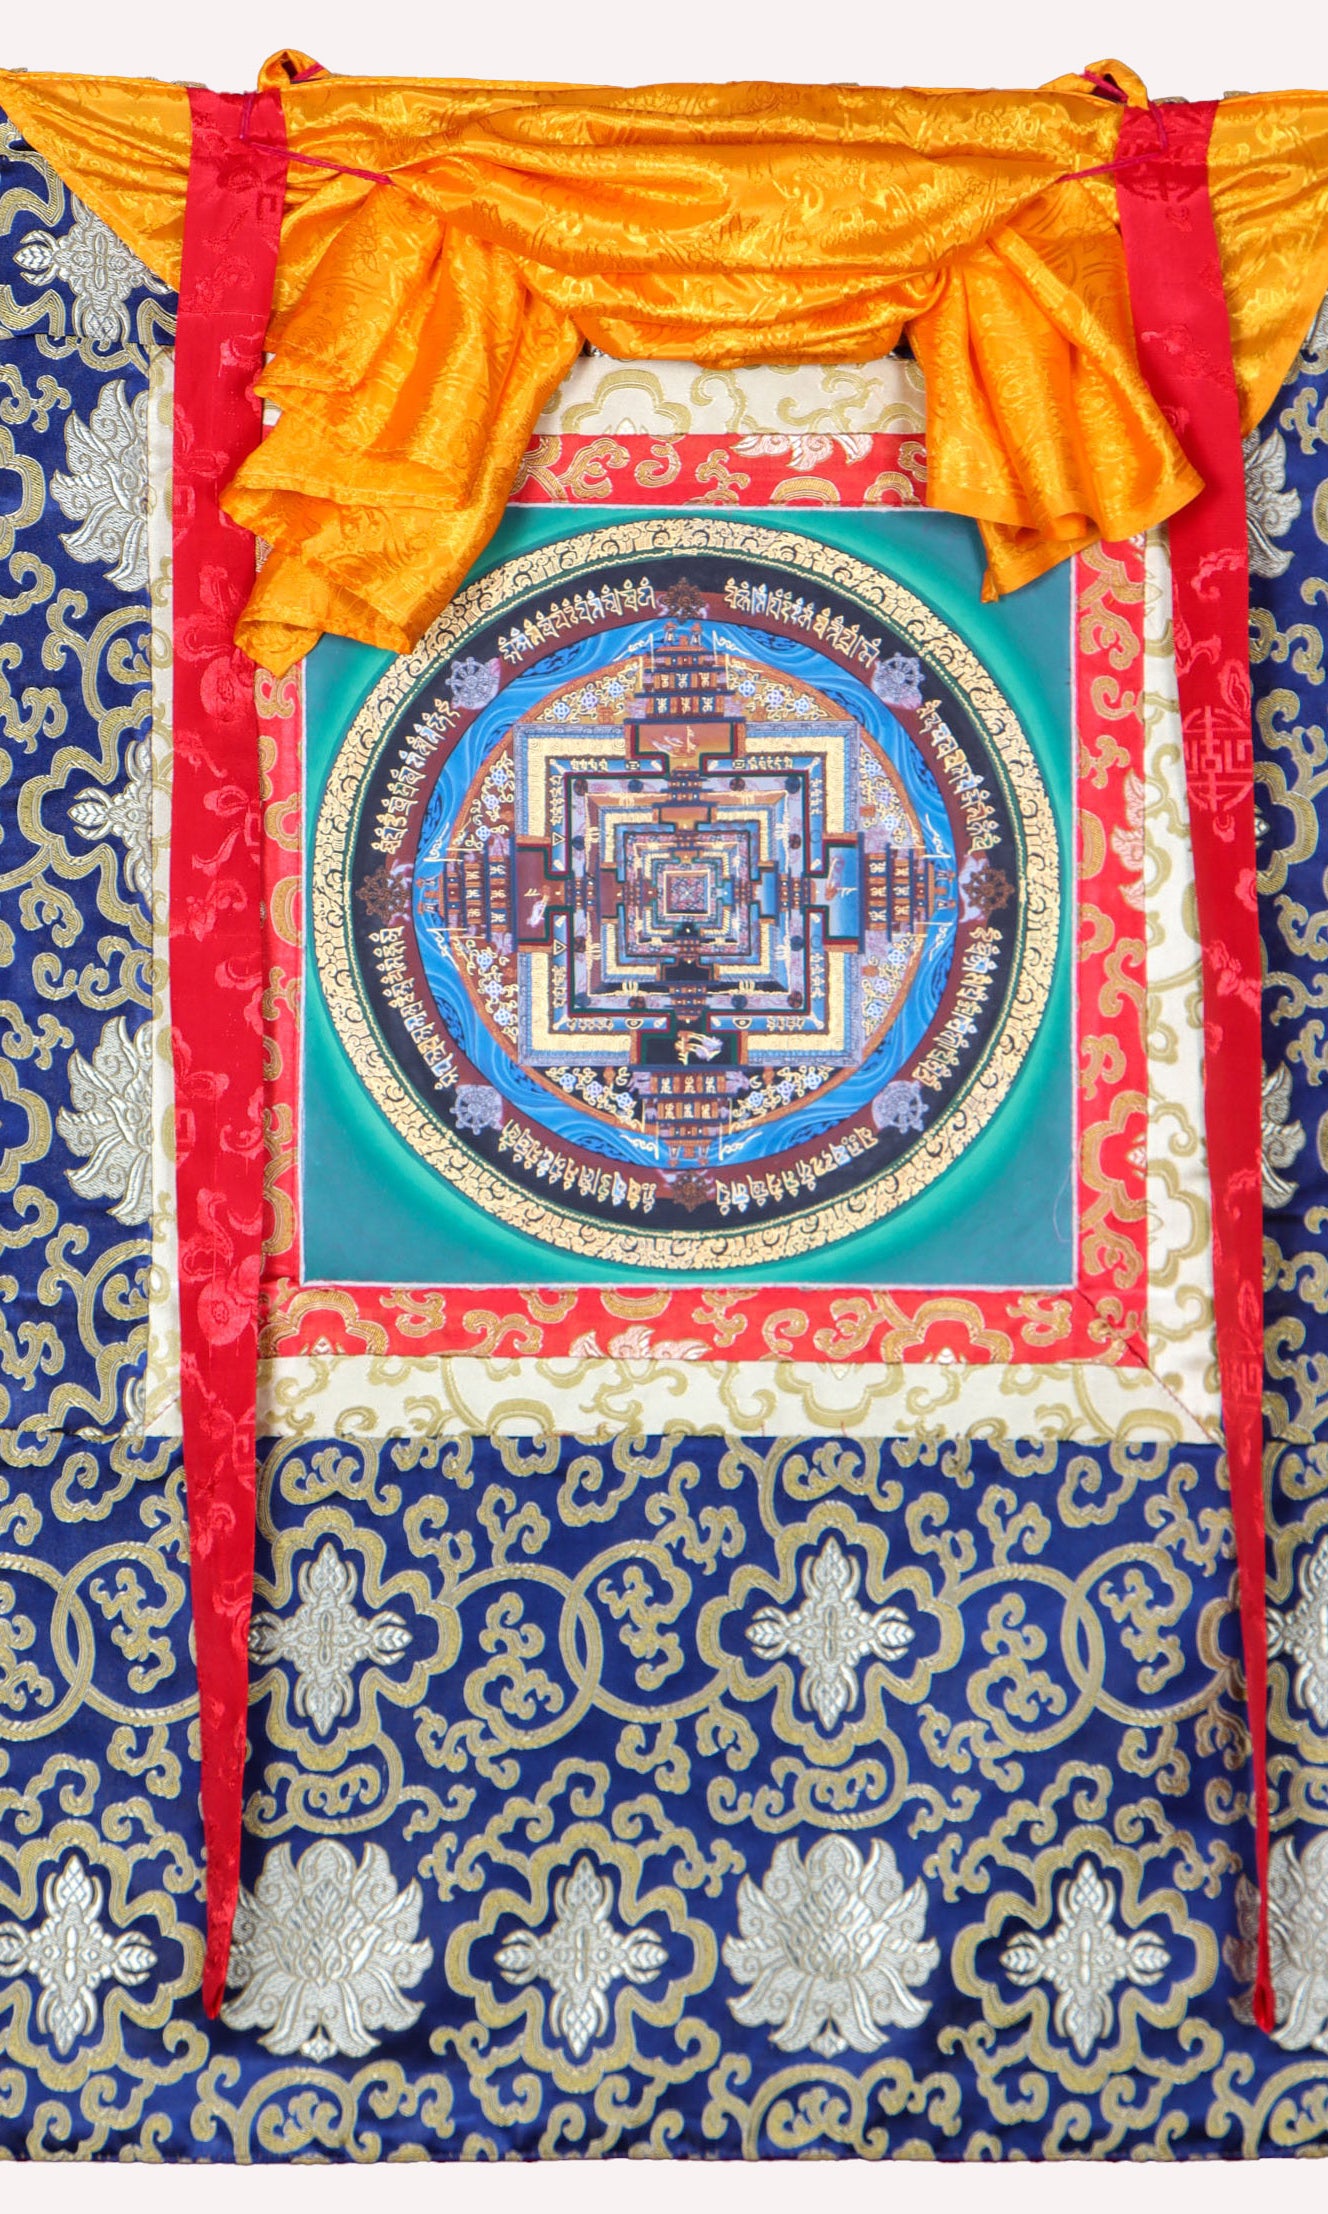 Kalachakra Mandala Brocade Thangka  Painting for meditation and contemplation.